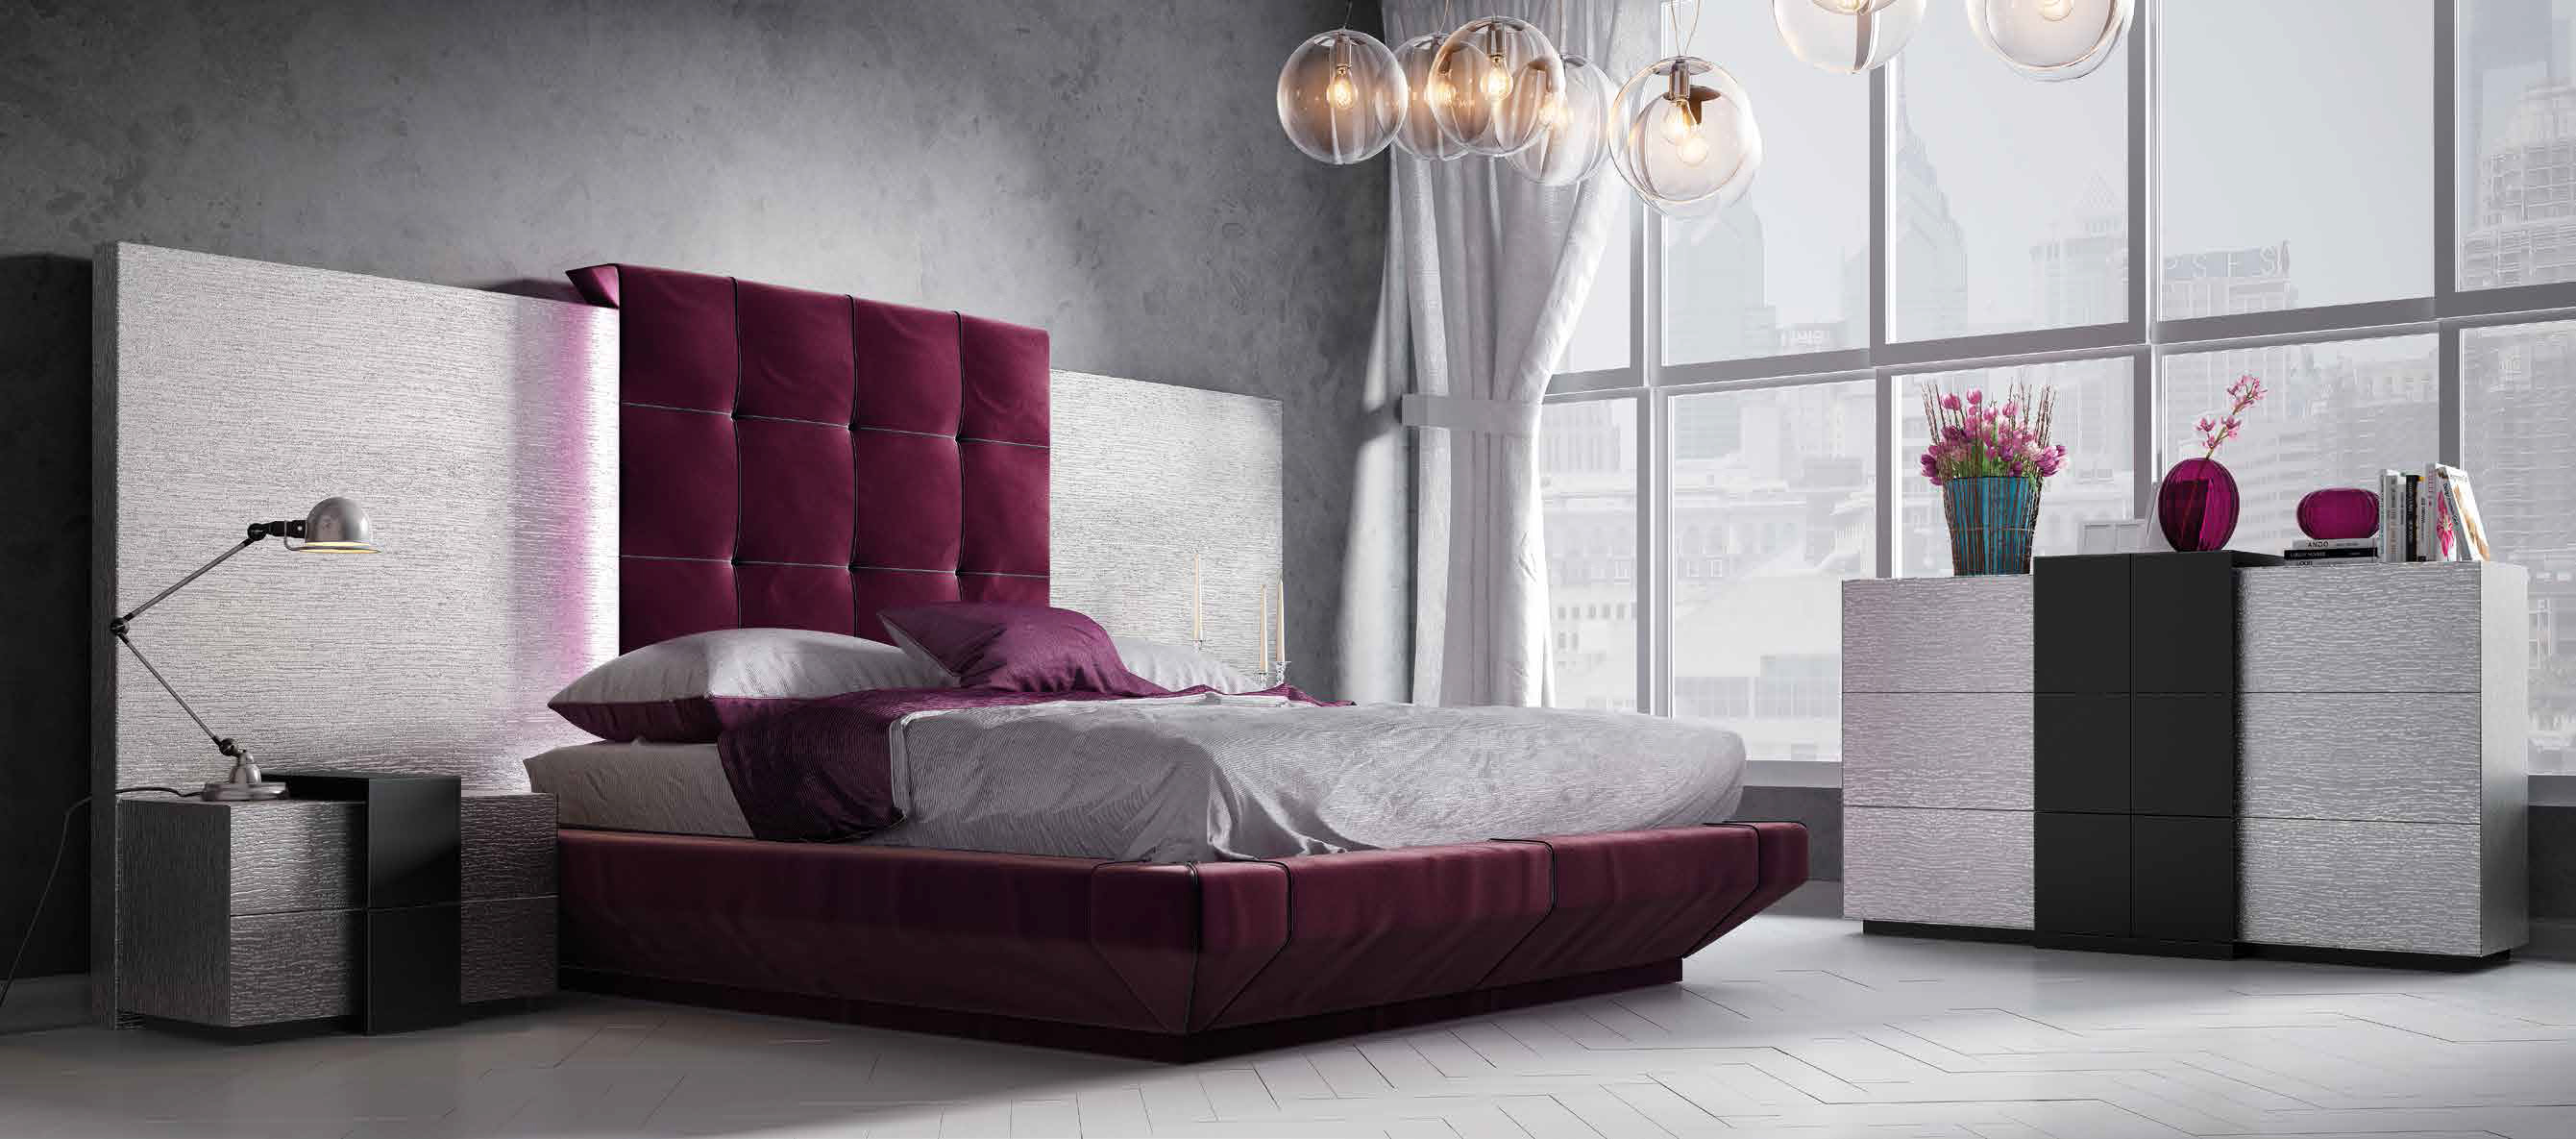 Brands Franco Furniture Avanty Bedrooms, Spain DOR 08